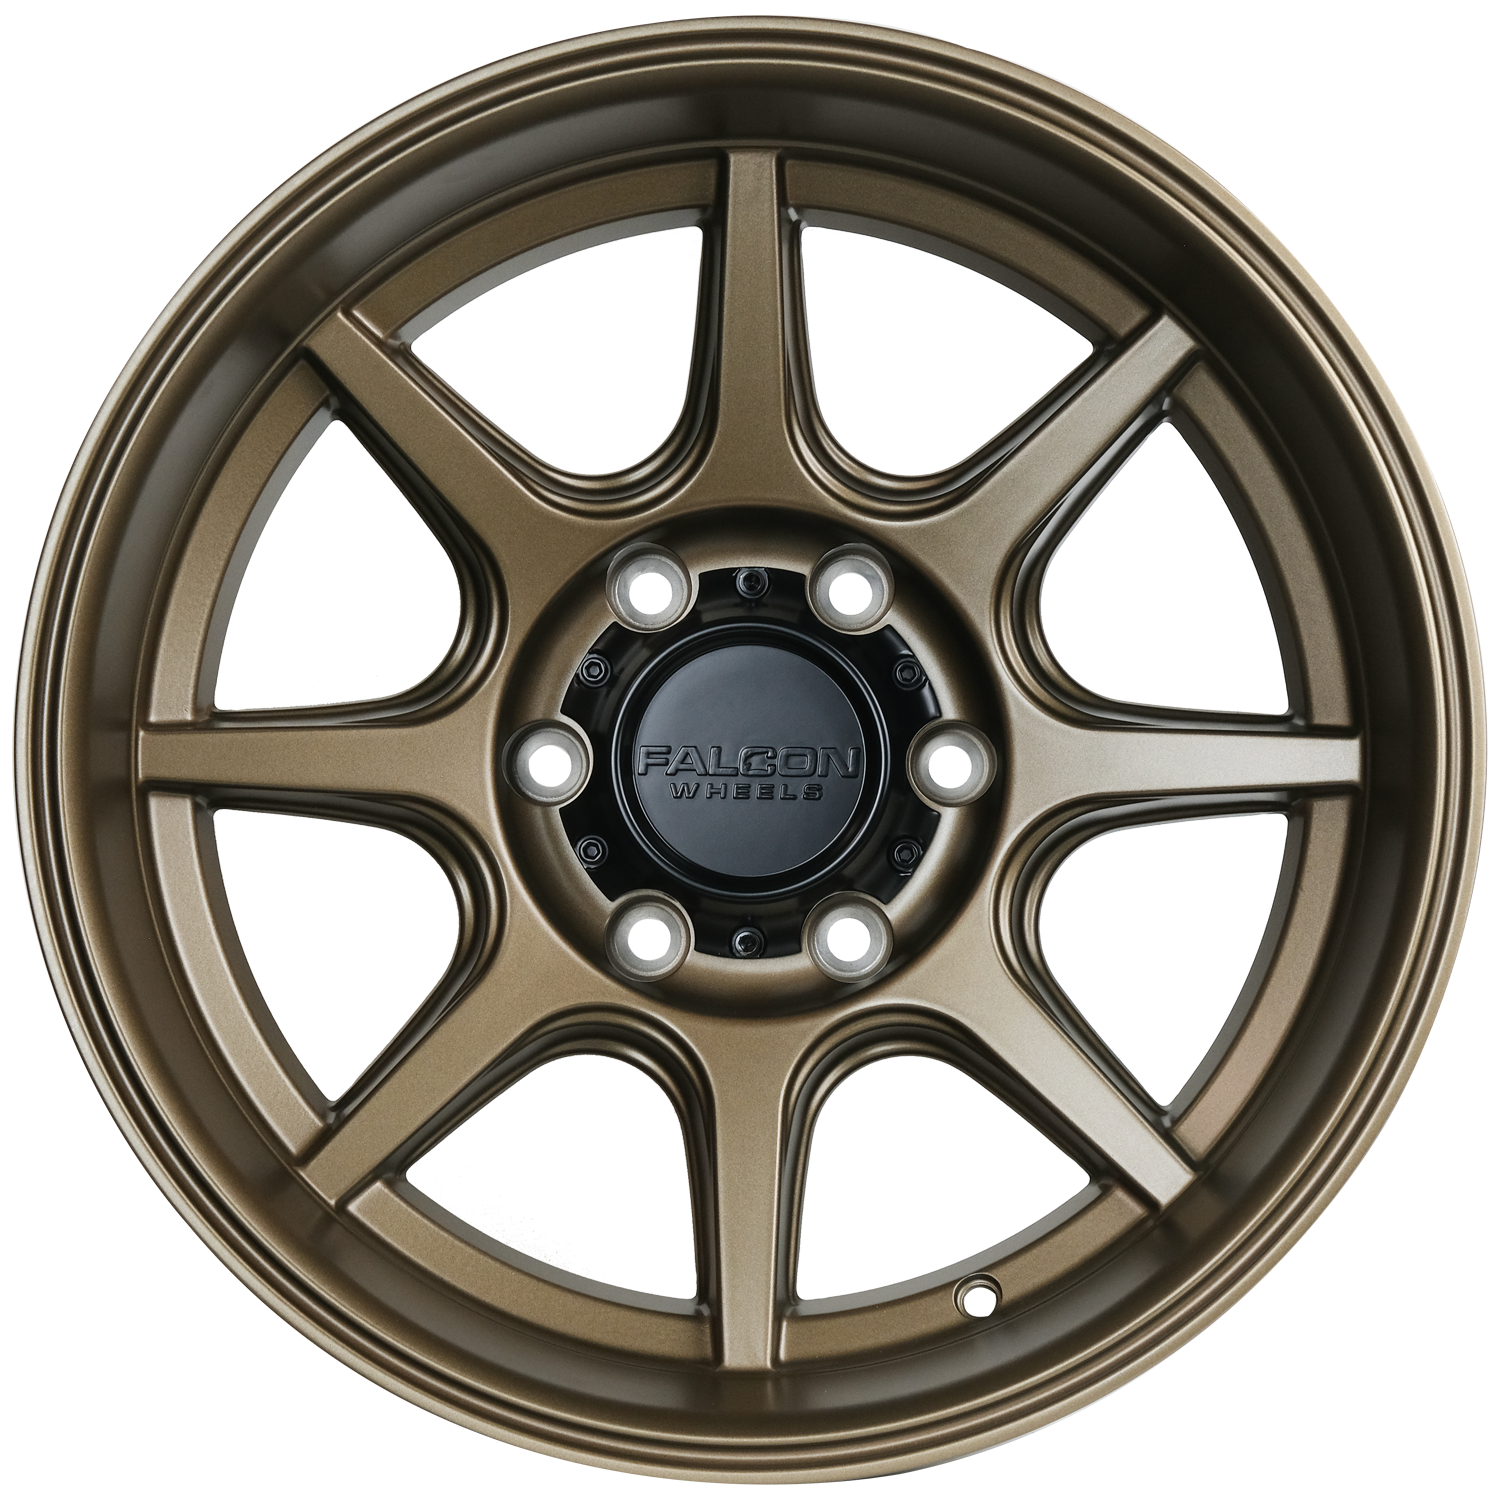 T8 "Seeker"- Bronze 17x9 - Premium Wheels from Falcon Off-Road Wheels - Just $295.00! Shop now at Falcon Off-Road Wheels 